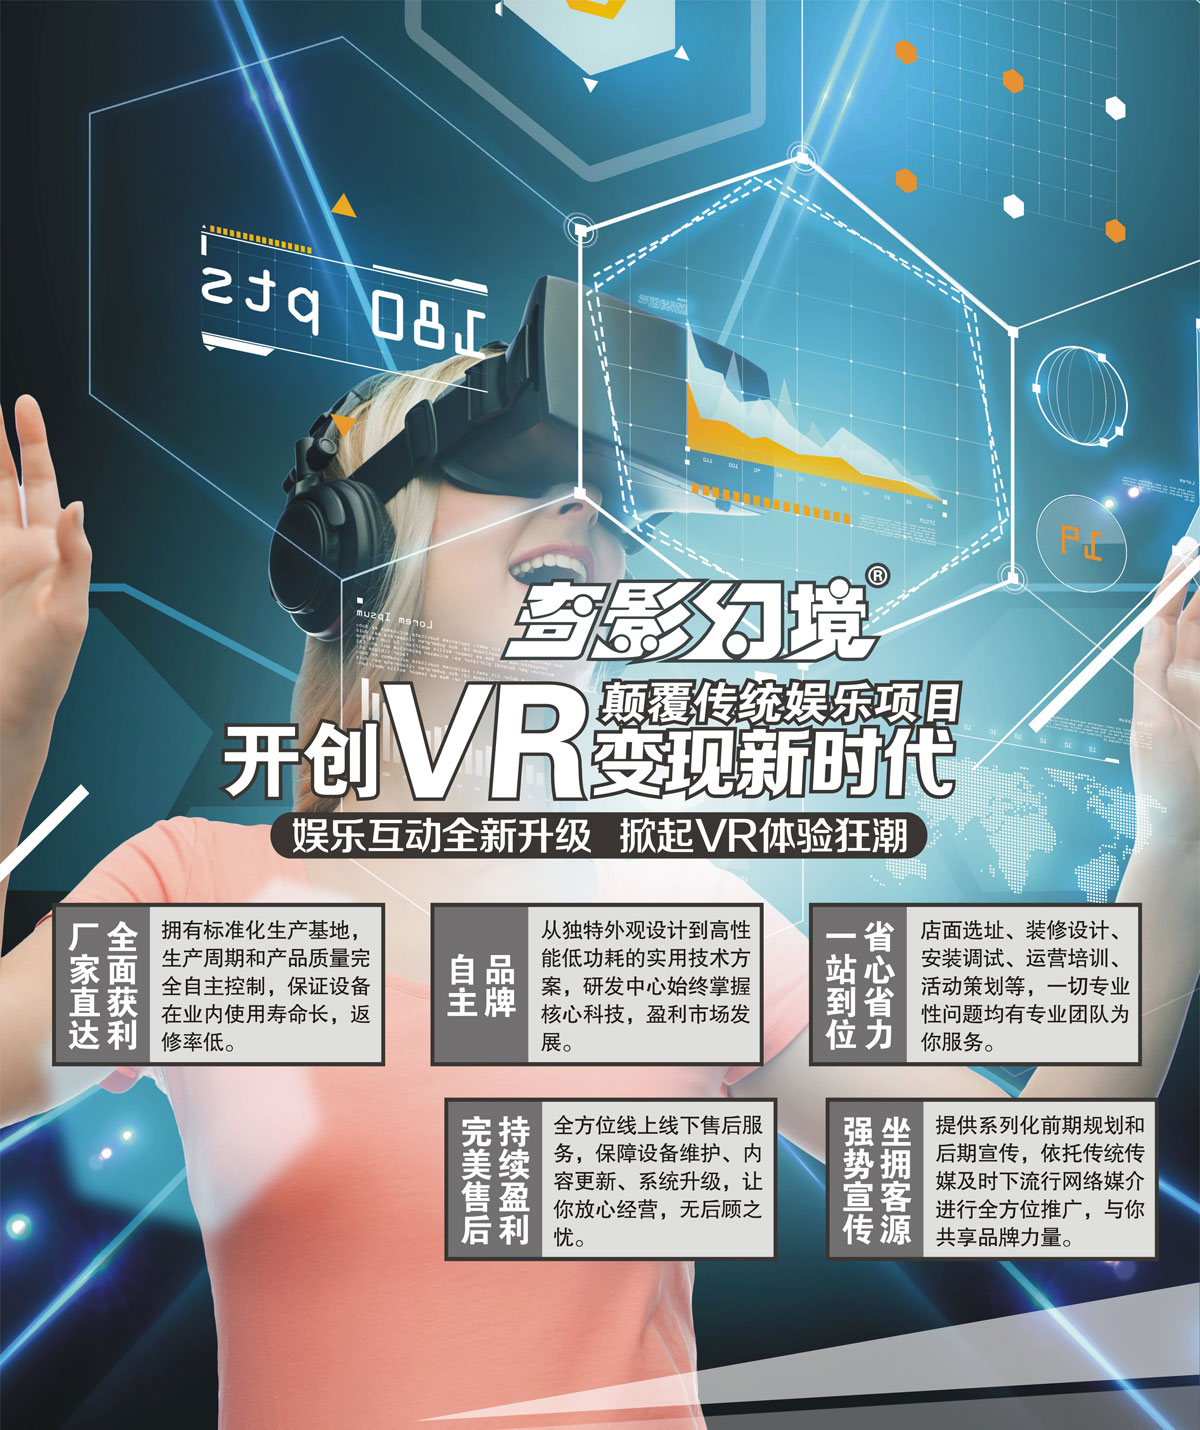 球幕影院开创VR变现新时代颠覆传统娱乐项目.jpg